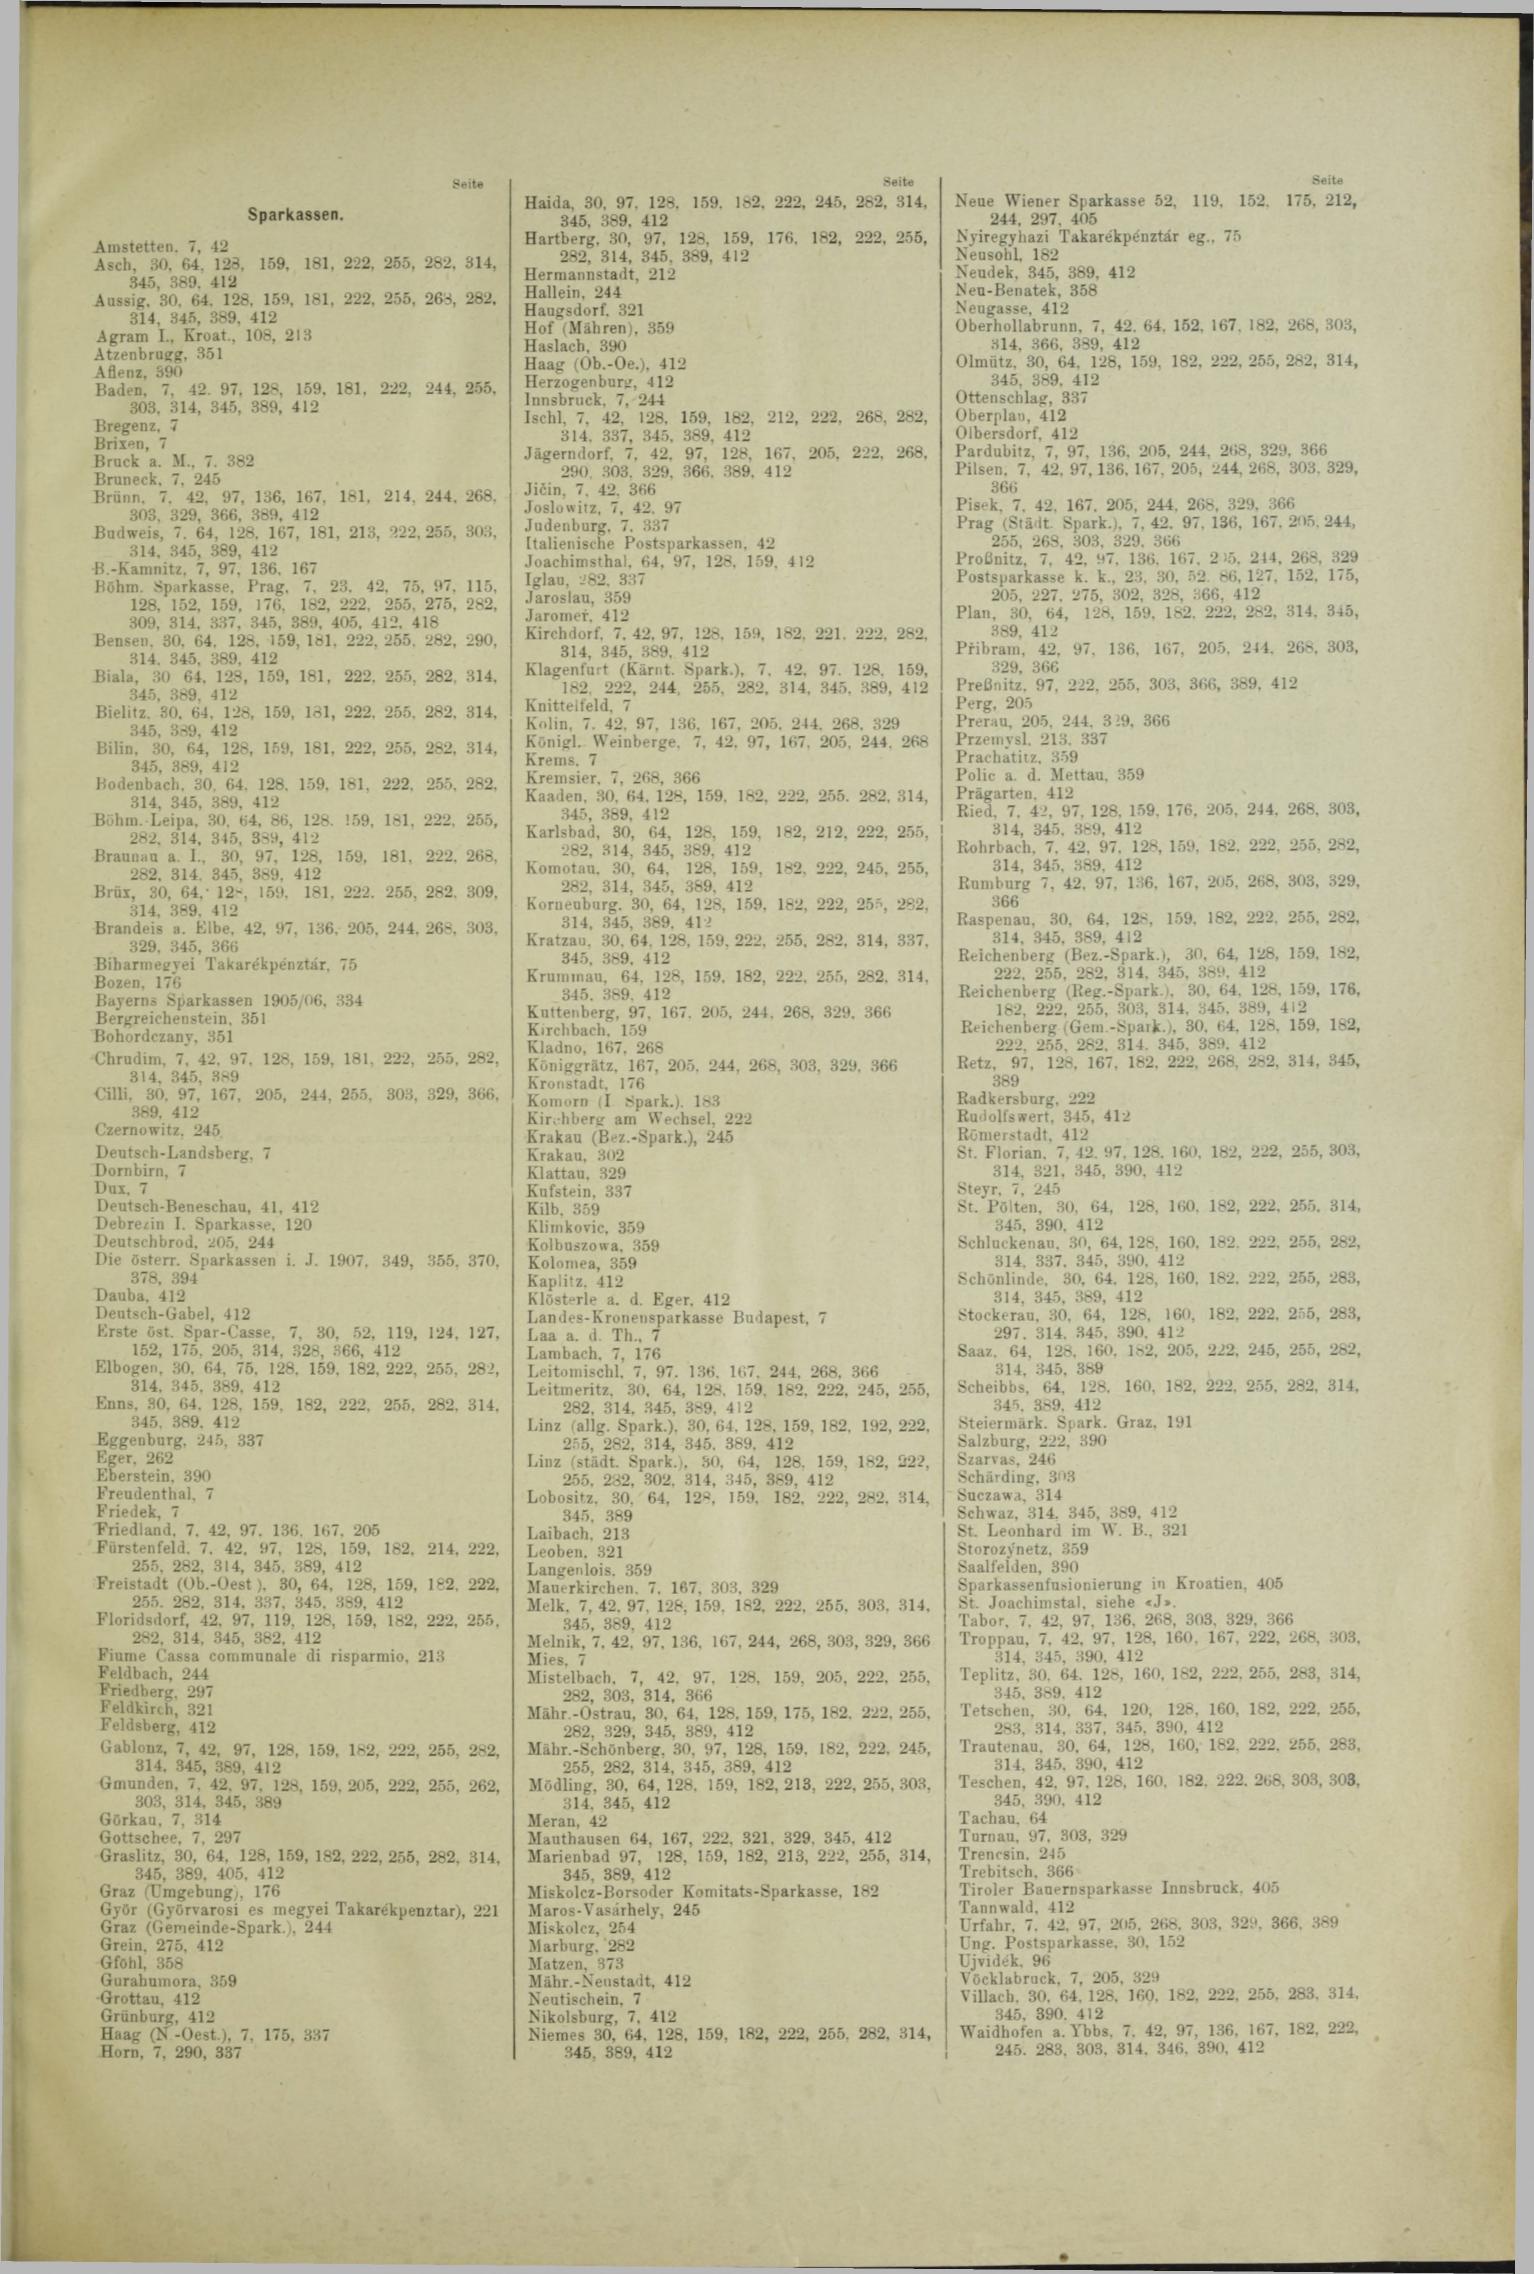 Der Tresor 26.12.1908 - Seite 9